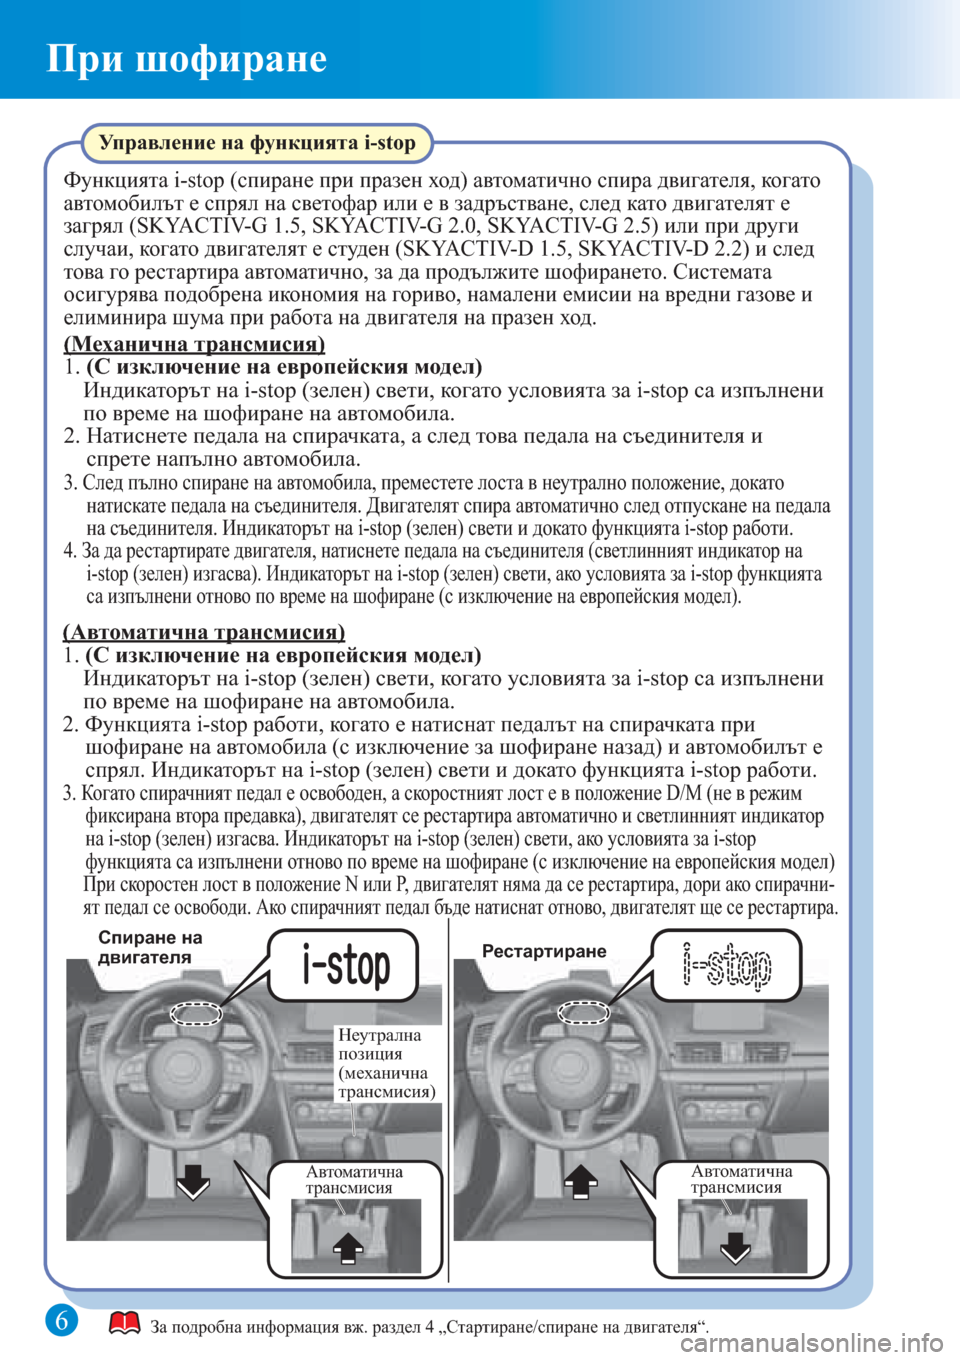 MAZDA MODEL 3 HATCHBACK 2015  Бързо ръководство (in Bulgarian) 6
При шофиране
Автоматична 
трансмисияАвтоматична 
трансмисия
Спиране на 
двигателяРестартиране
Неутрална 
�